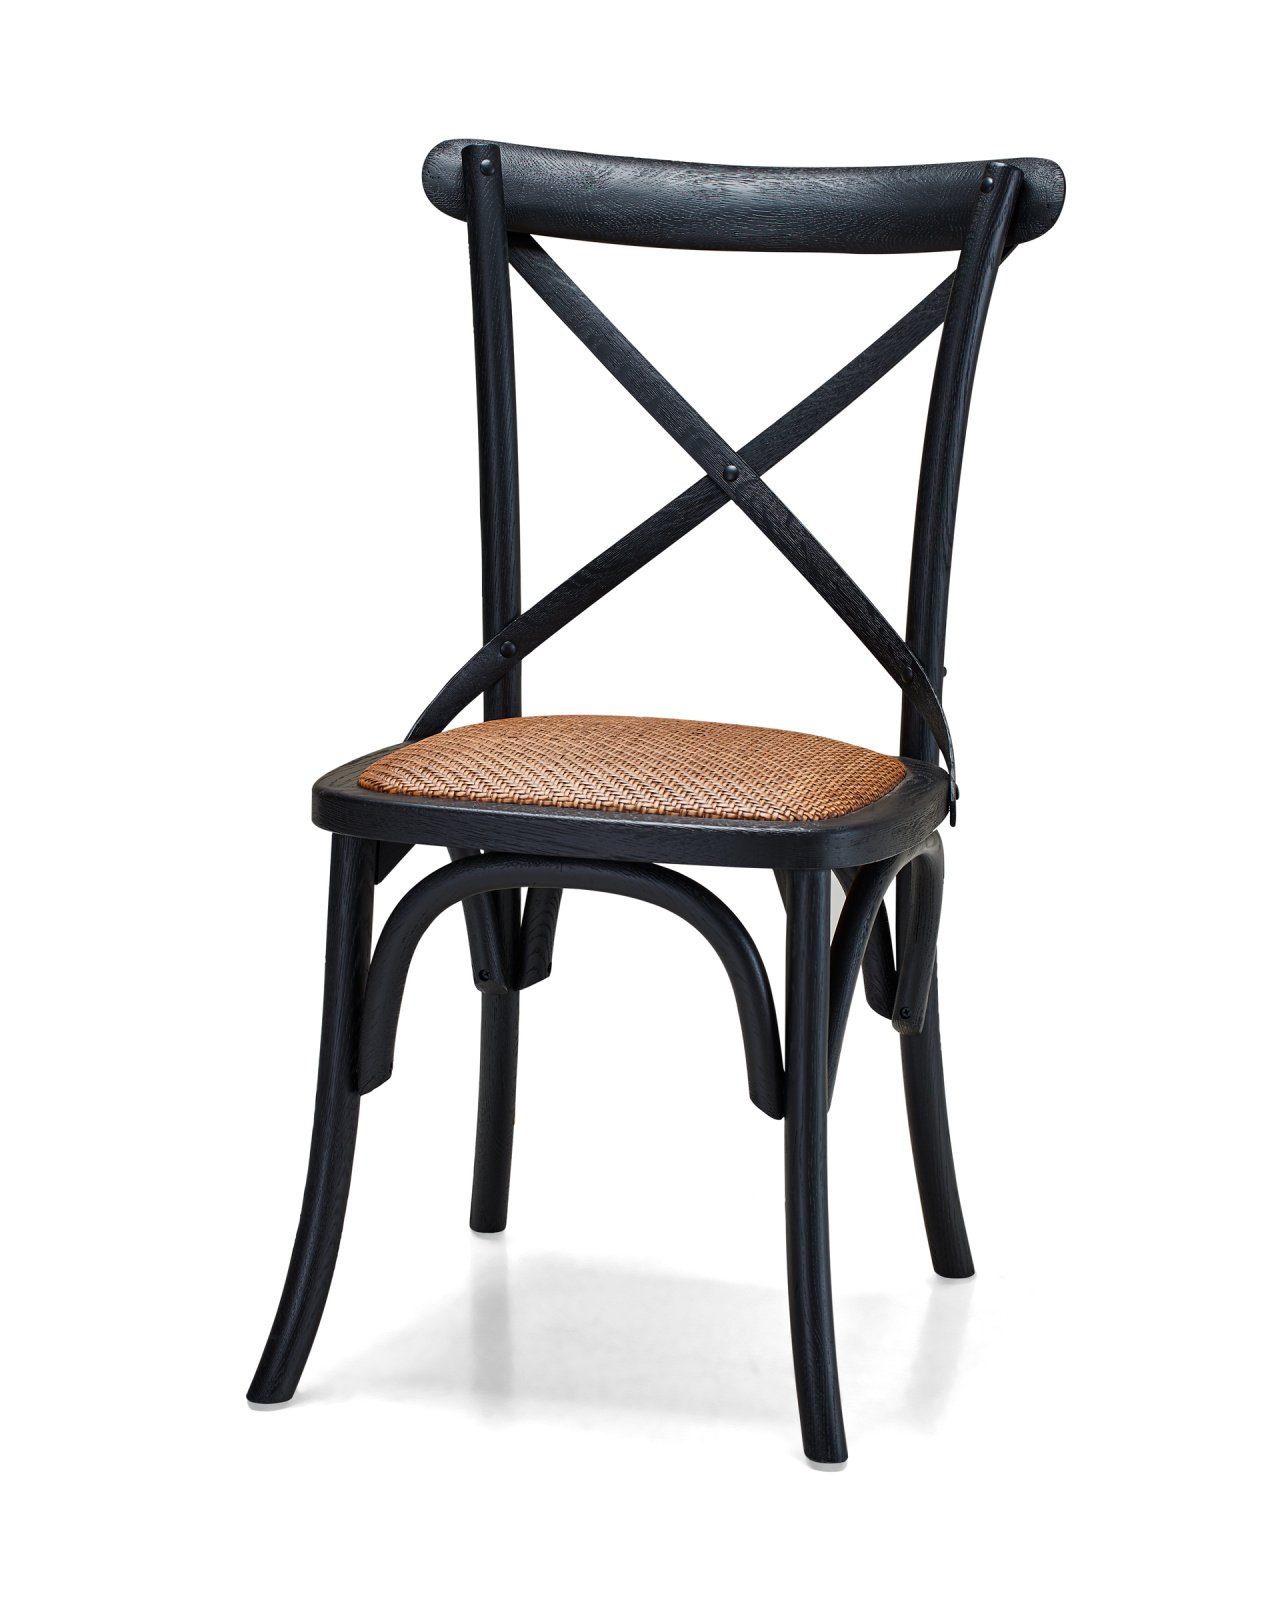 Newport Cross dining chair, Black Drifted Oak